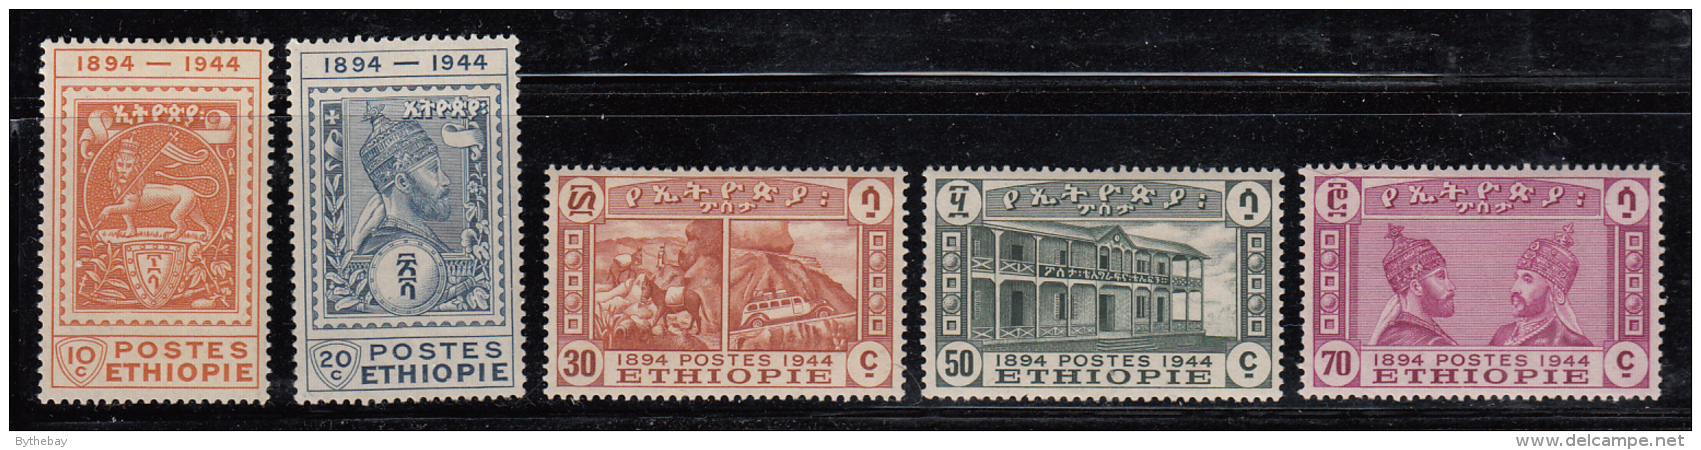 Ethiopia 1947 MH Scott #273-#277 Set Of 5 50th Anniv Postal Service - Ethiopie